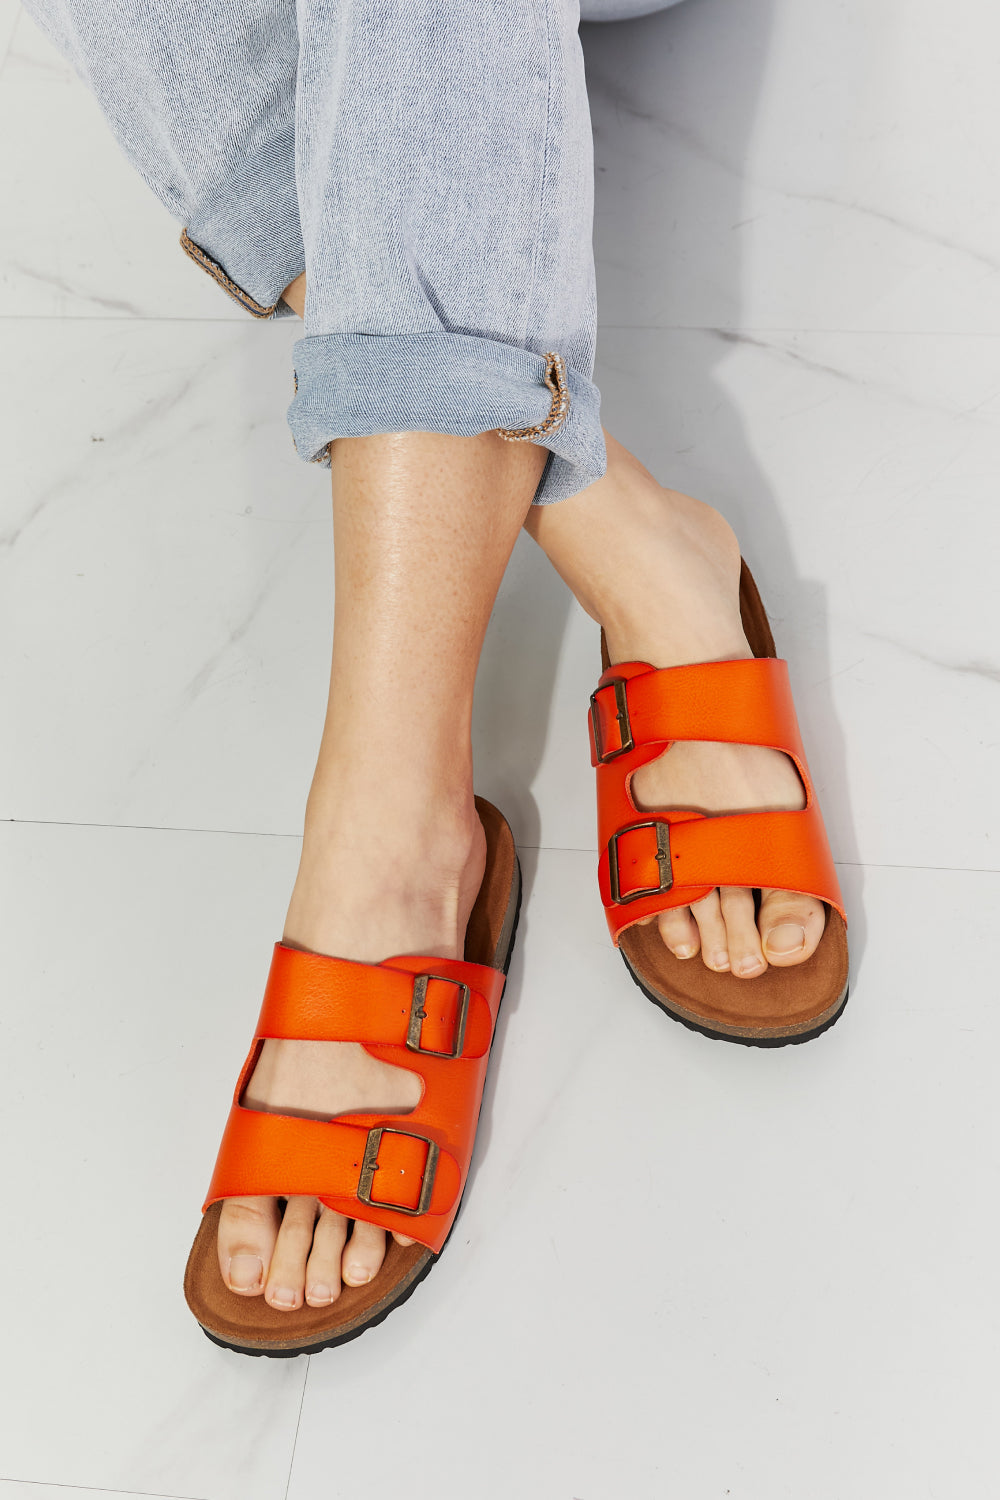 MMShoes Feeling Alive Double Banded Slide Sandals in Orange - nailedmoms